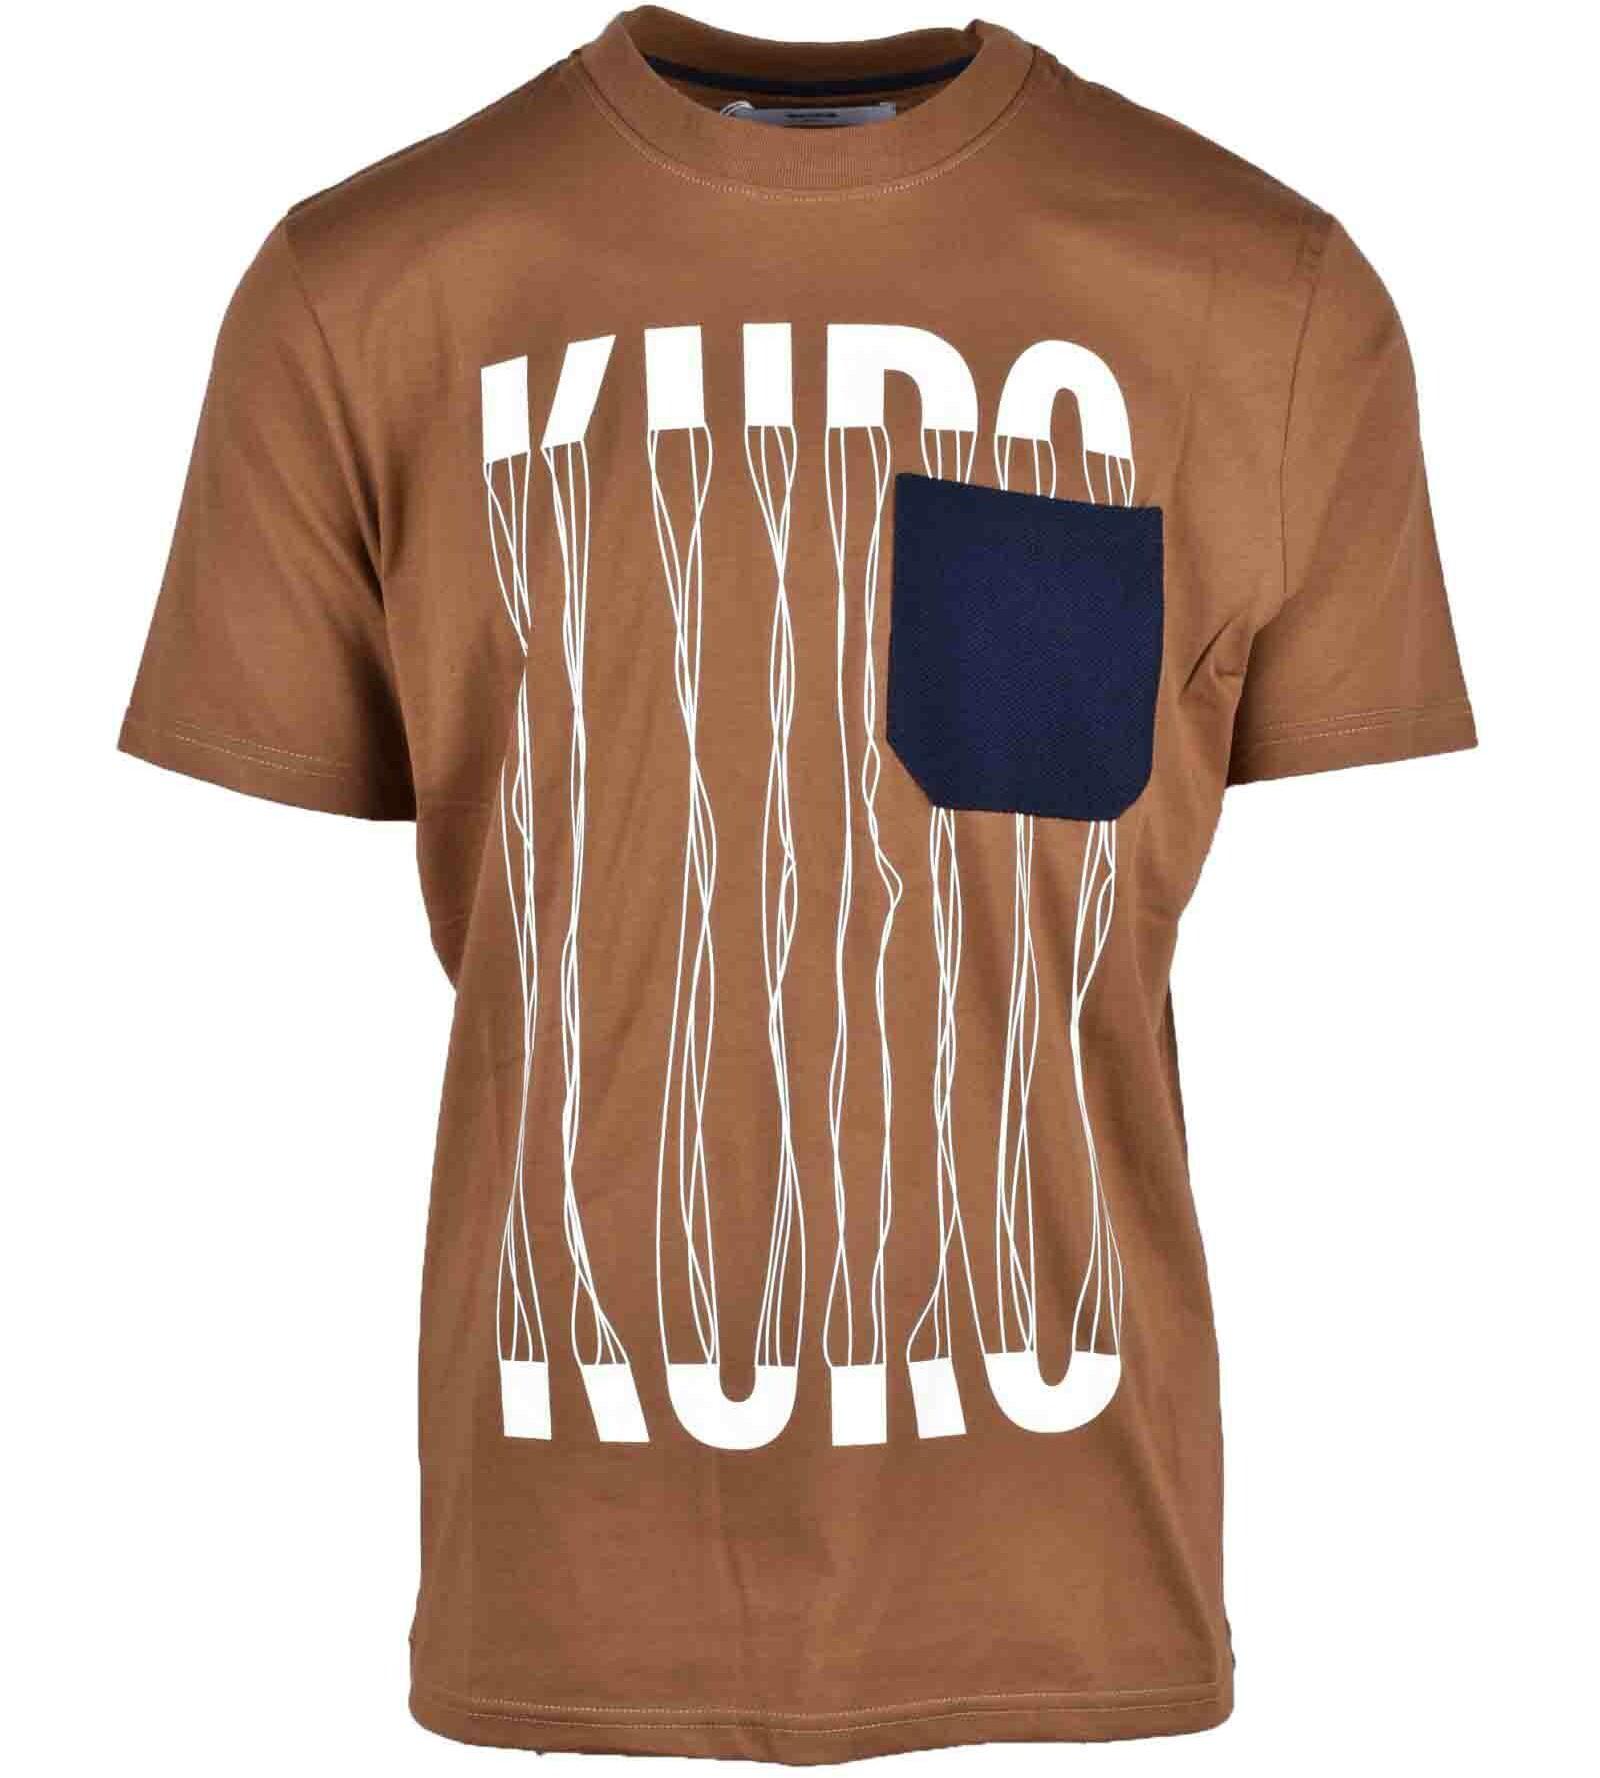 Shop Louis Vuitton Men's Brown T-Shirts